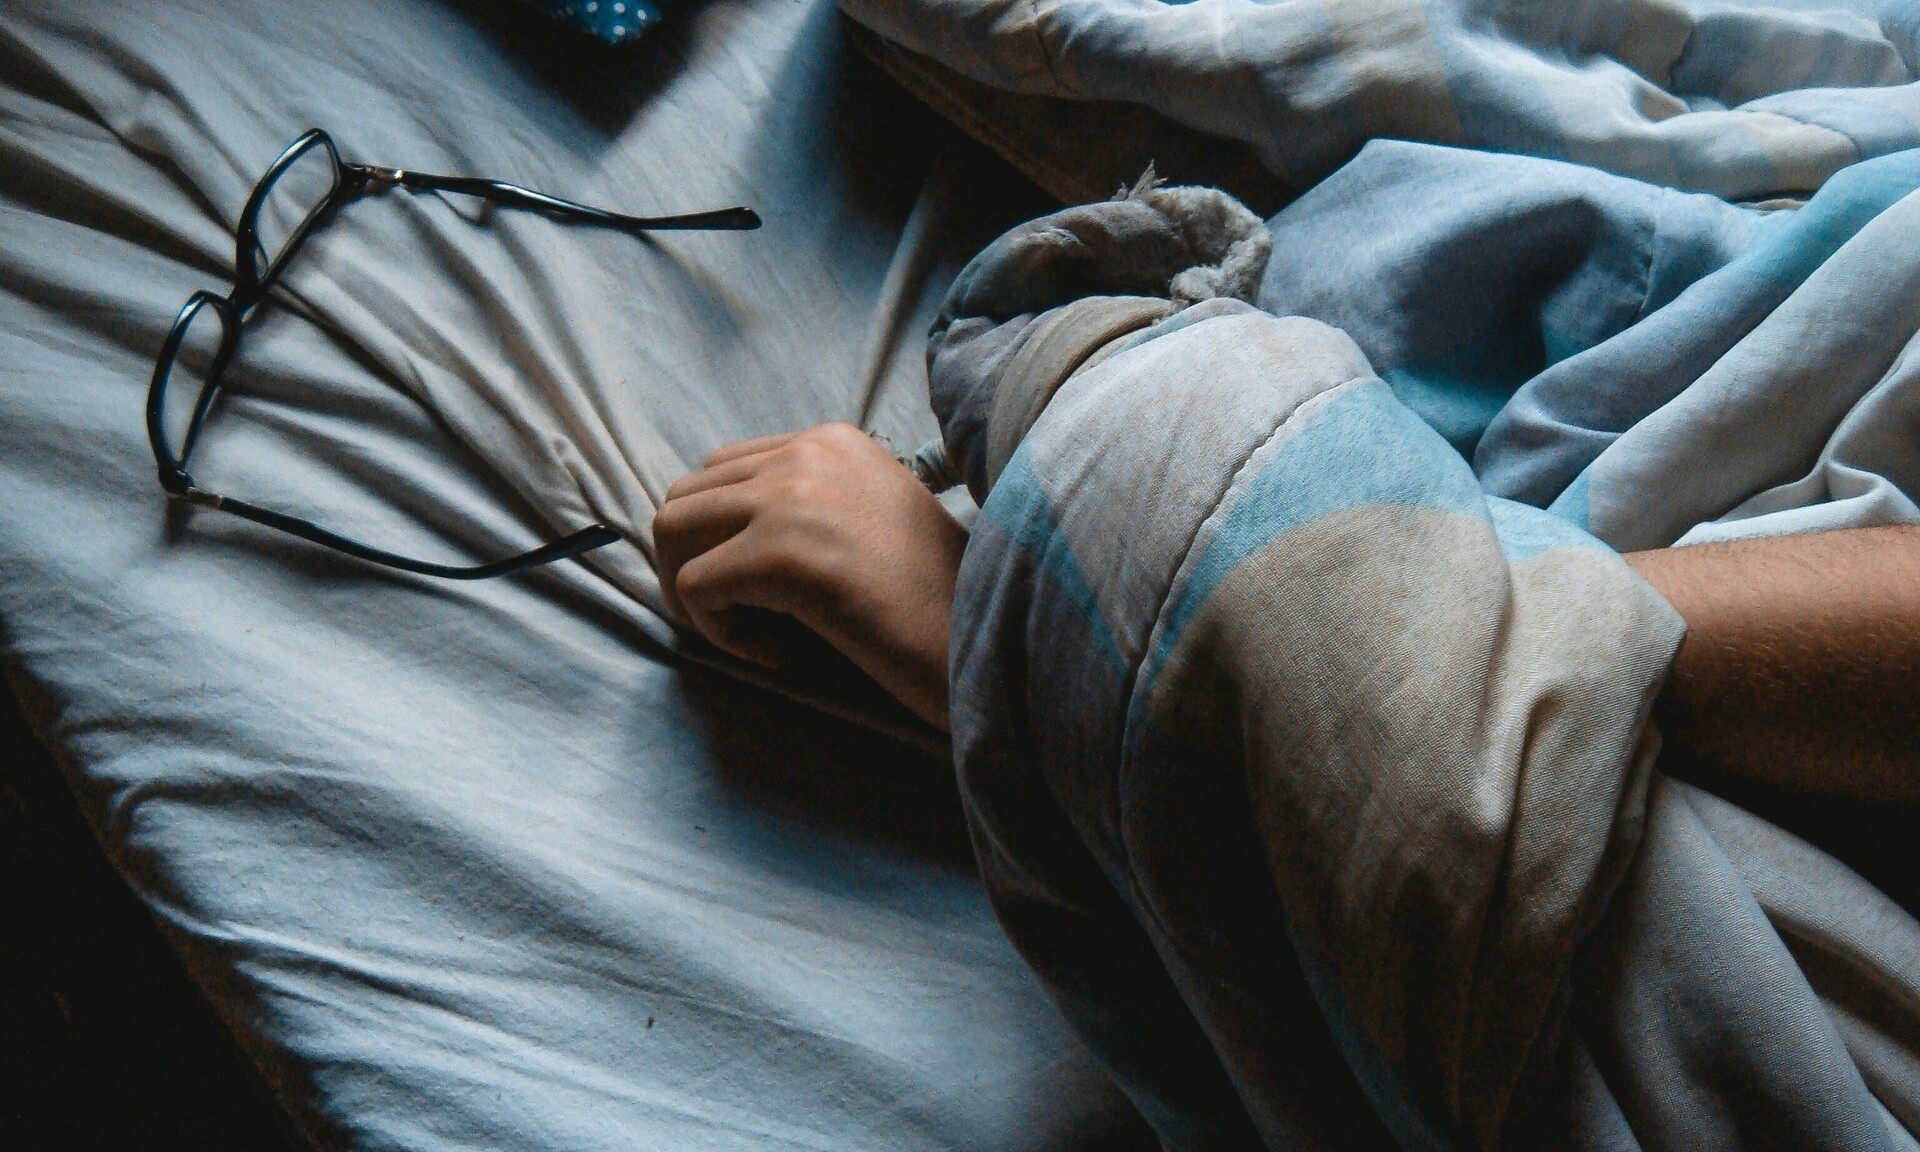   Λίγα λεπτά ύπνου αρκούν για να νιώσετε… ξεκούραστοι – Τι είναι τα power naps